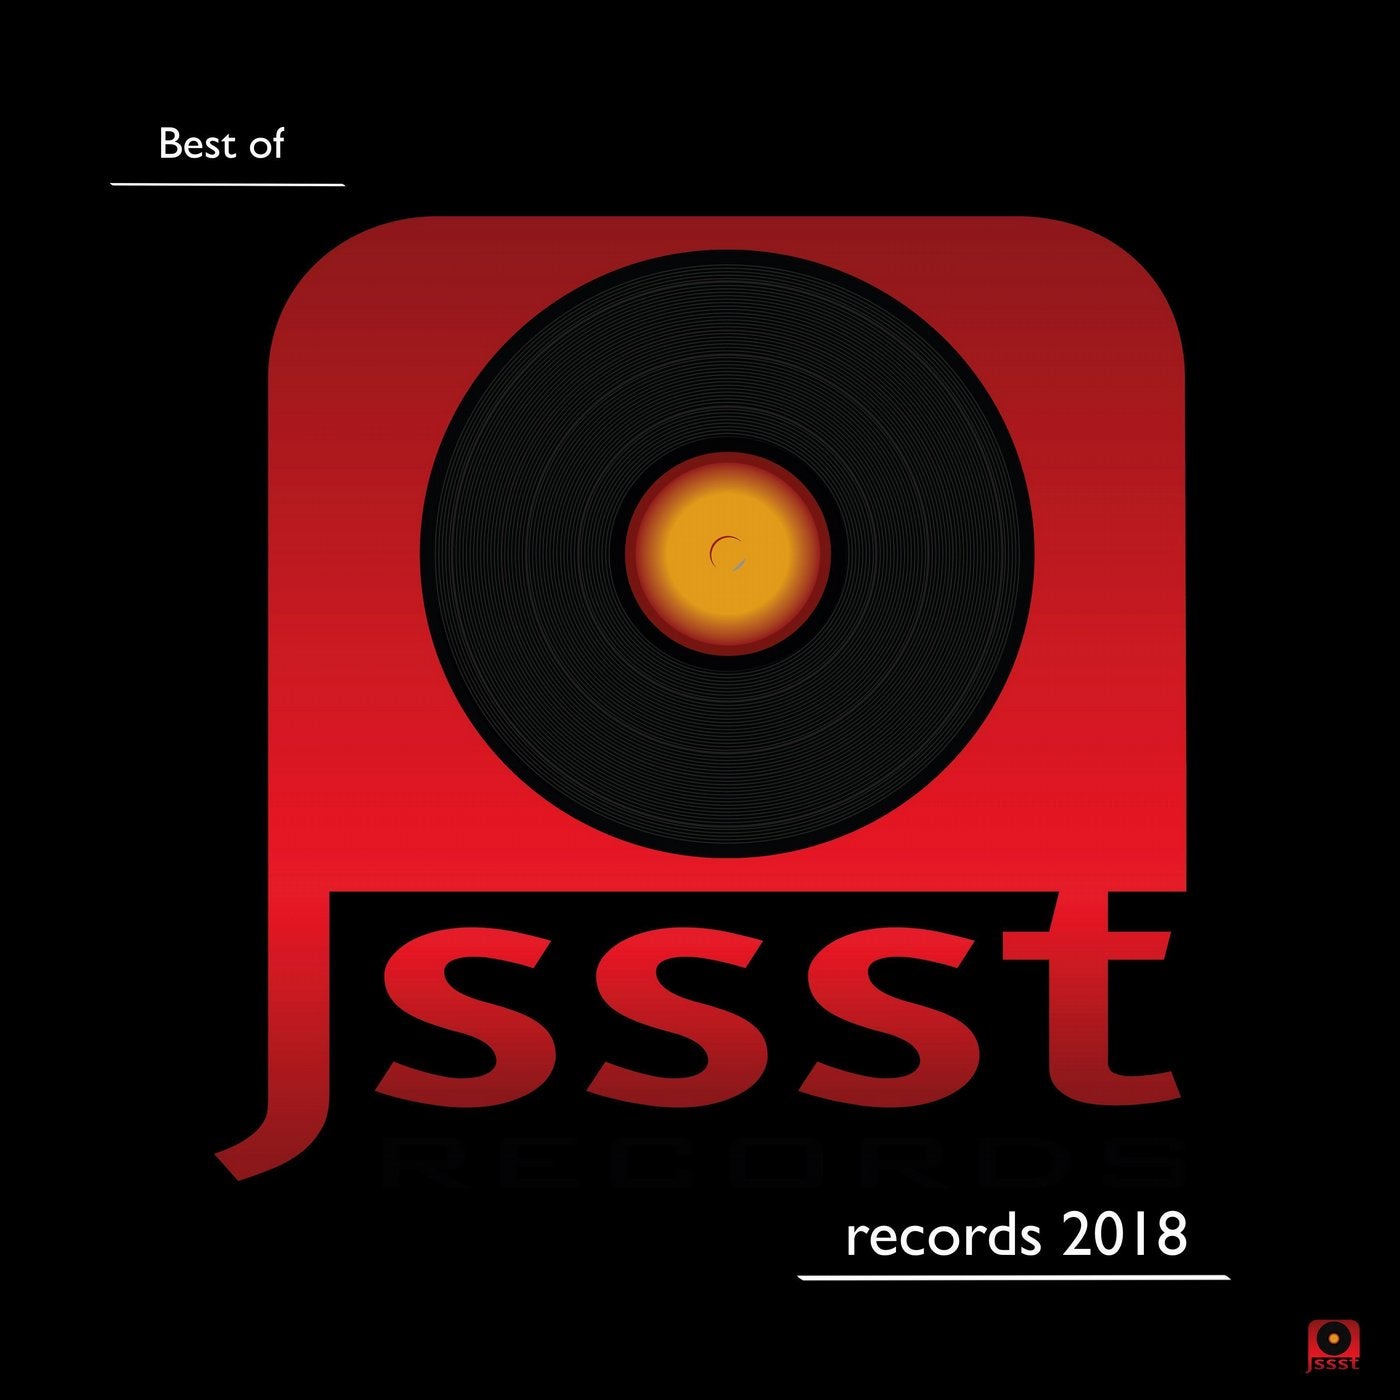 Best of Jssst Records 2018